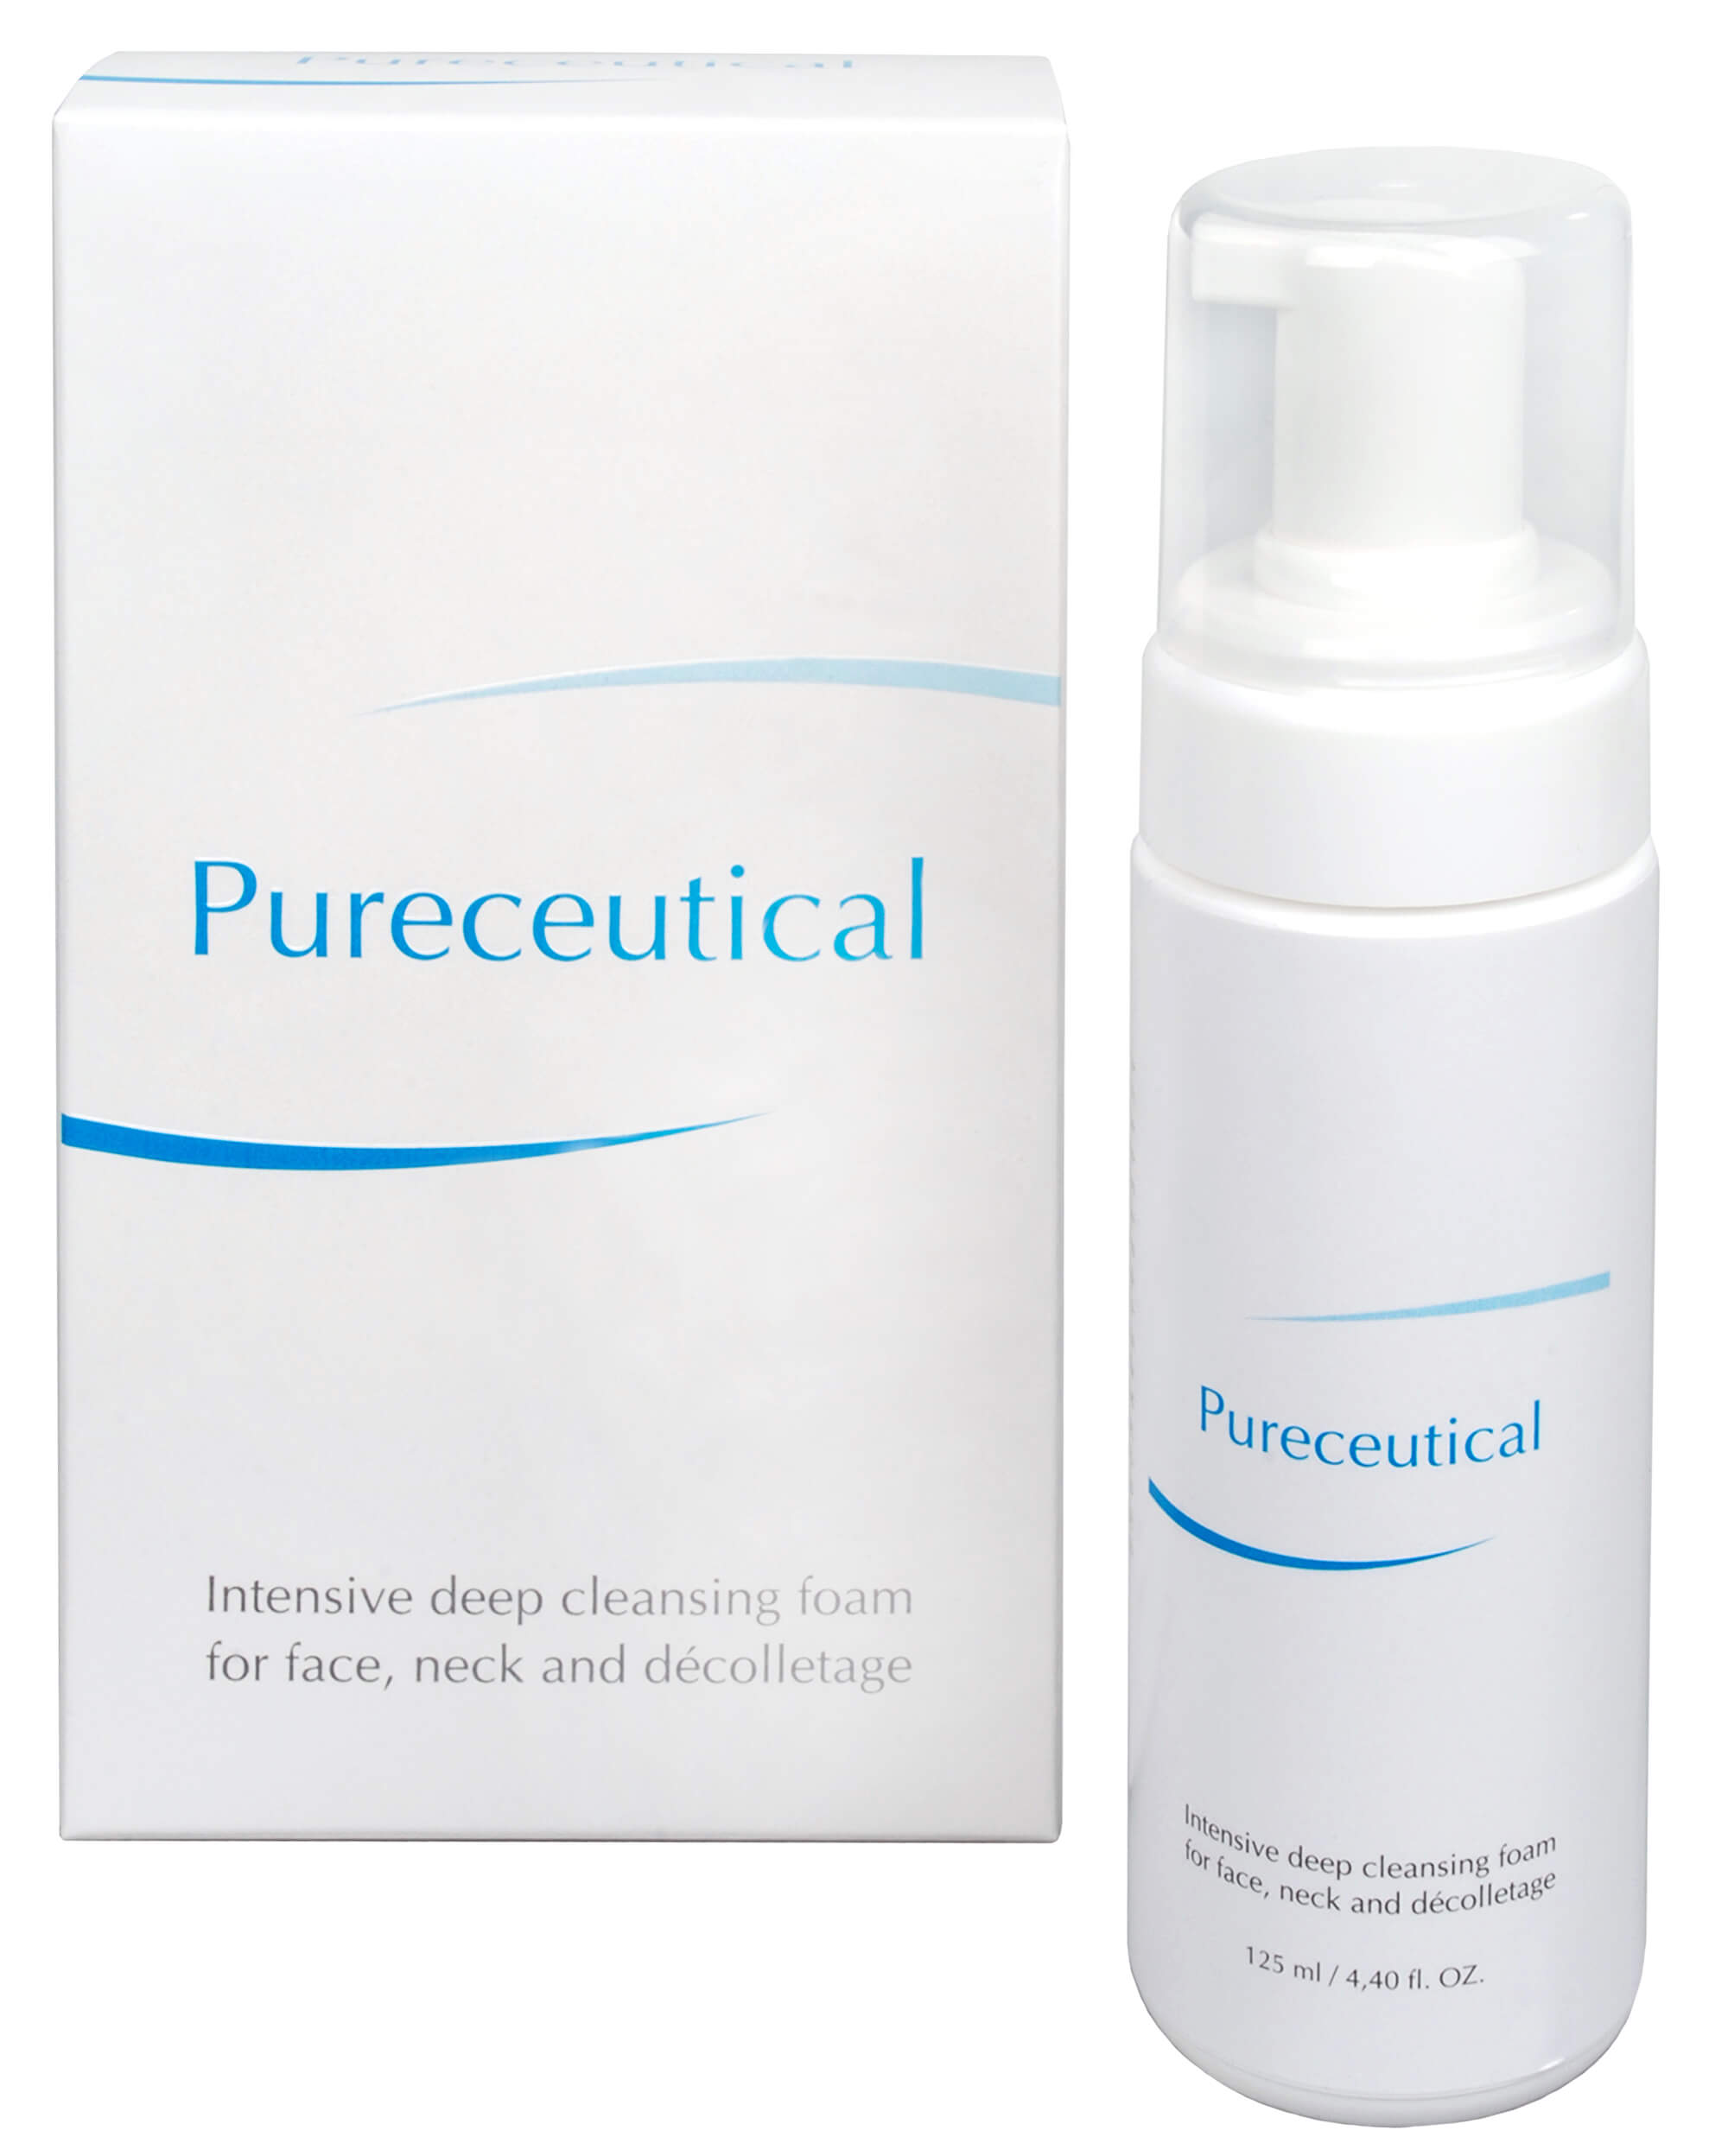 Zobrazit detail výrobku Fytofontana Pureceutical - intenzivní hloubková čisticí pěna na tvář, krk a dekolt 125 ml